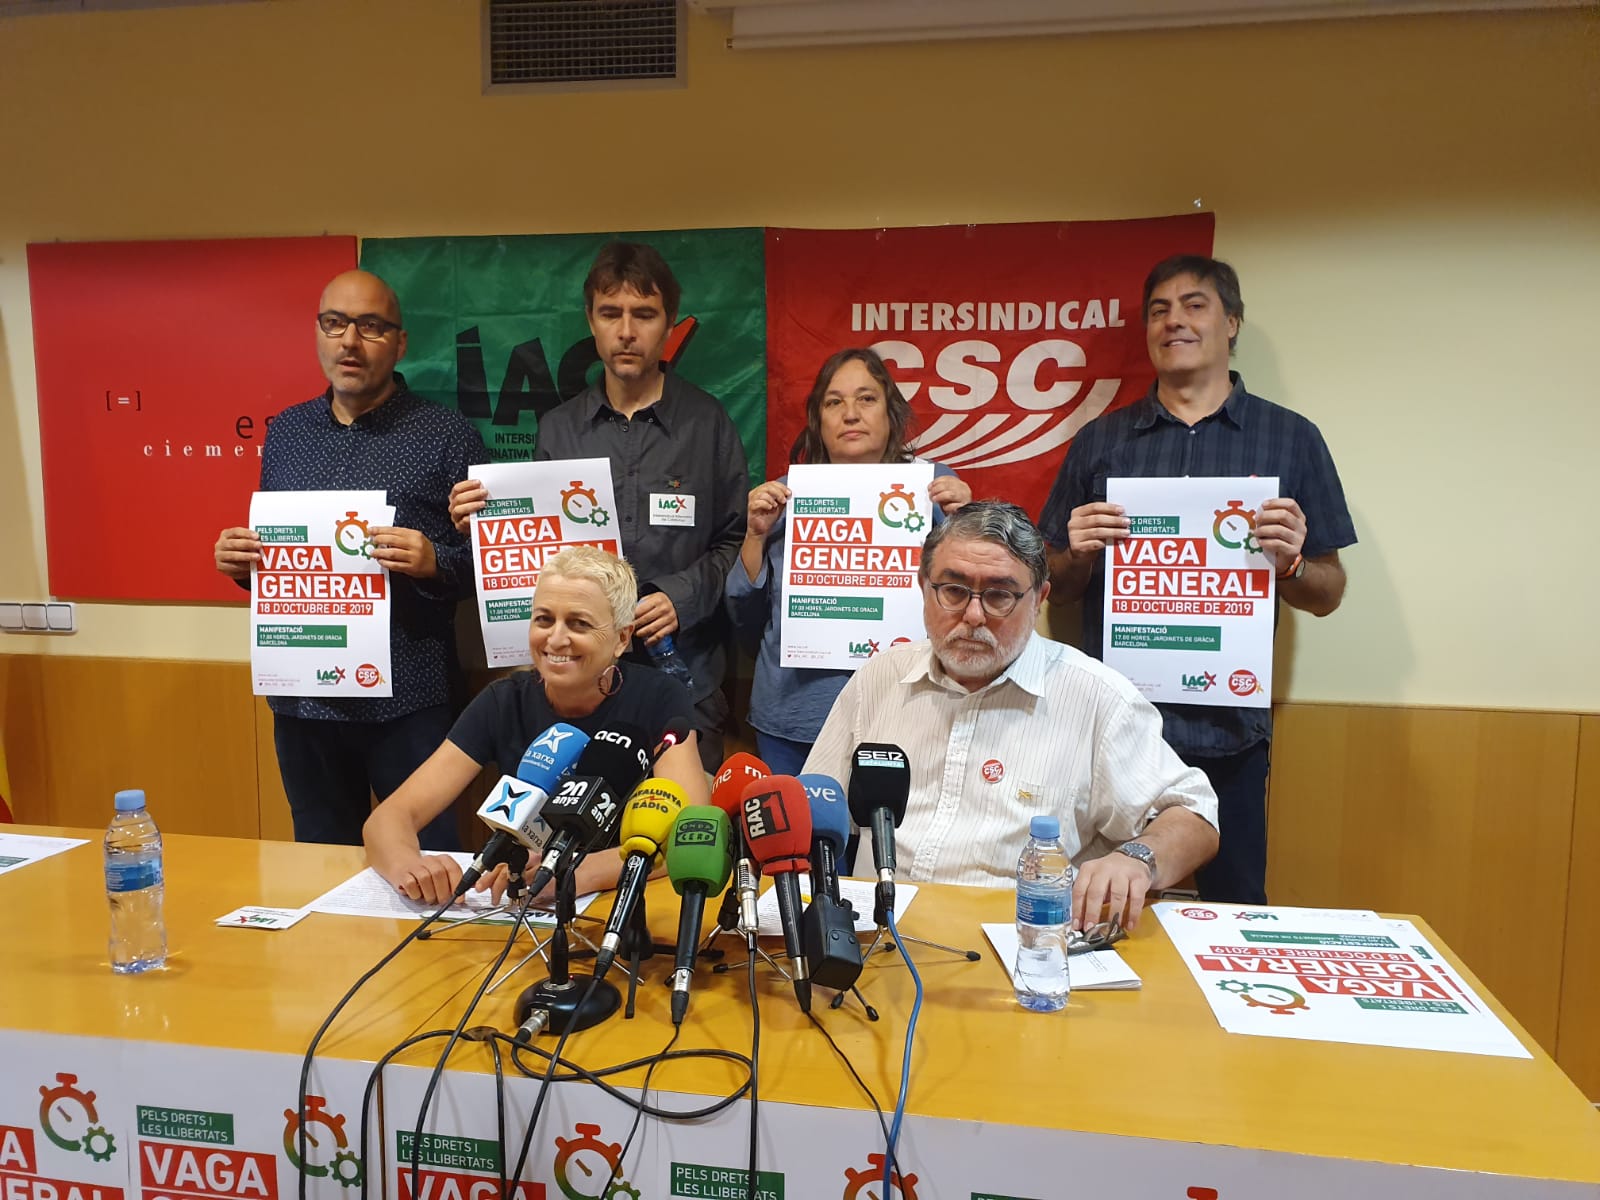 Intersindical vaga general presentació   Carlota Serra